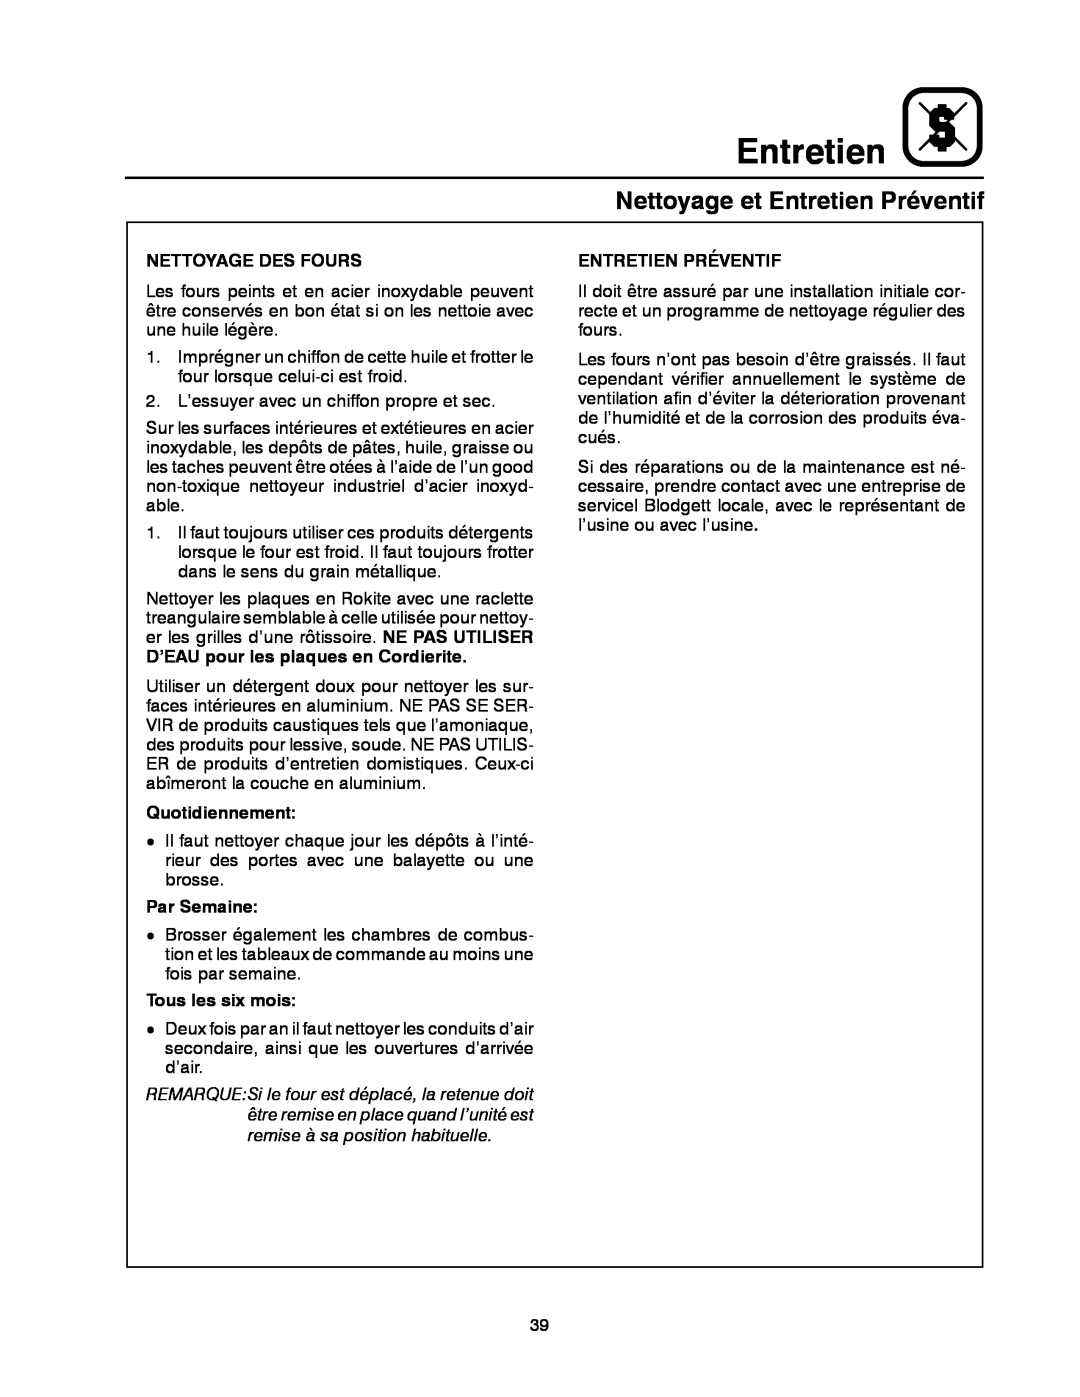 Blodgett 900 SERIES manual Nettoyage et Entretien Préventif, Nettoyage Des Fours, D’EAU pour les plaques en Cordierite 